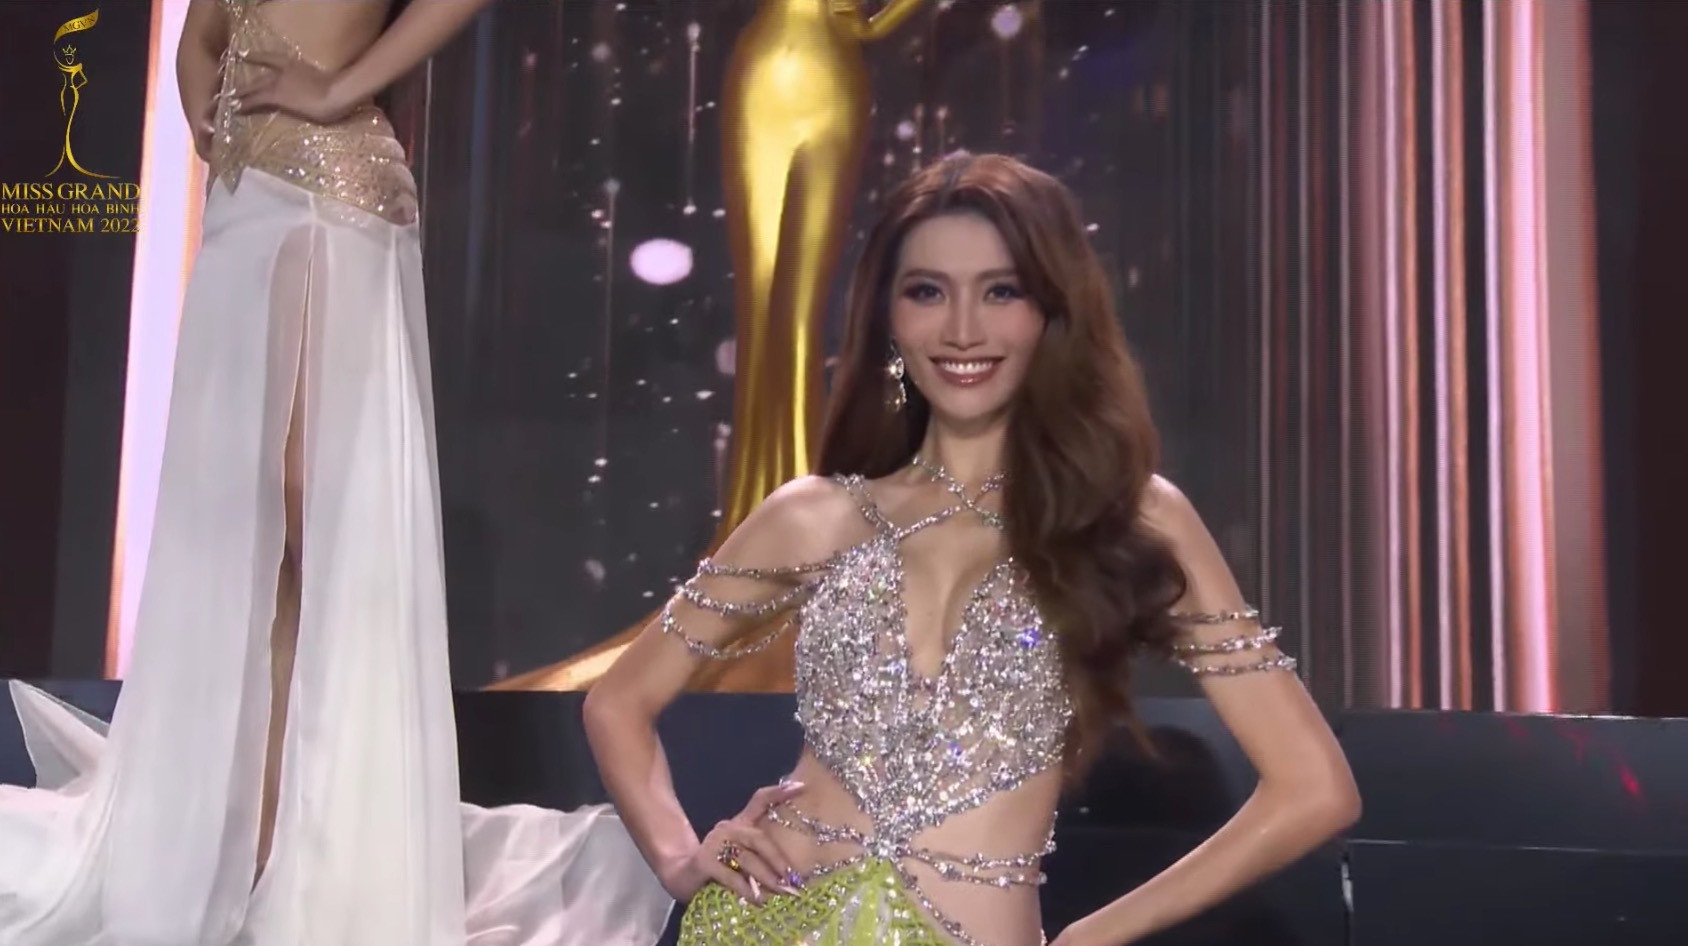 Đoàn Thiên Ân đăng quang Miss Grand Vietnam - Hoa hậu Hòa bình Việt Nam 2022 - 16